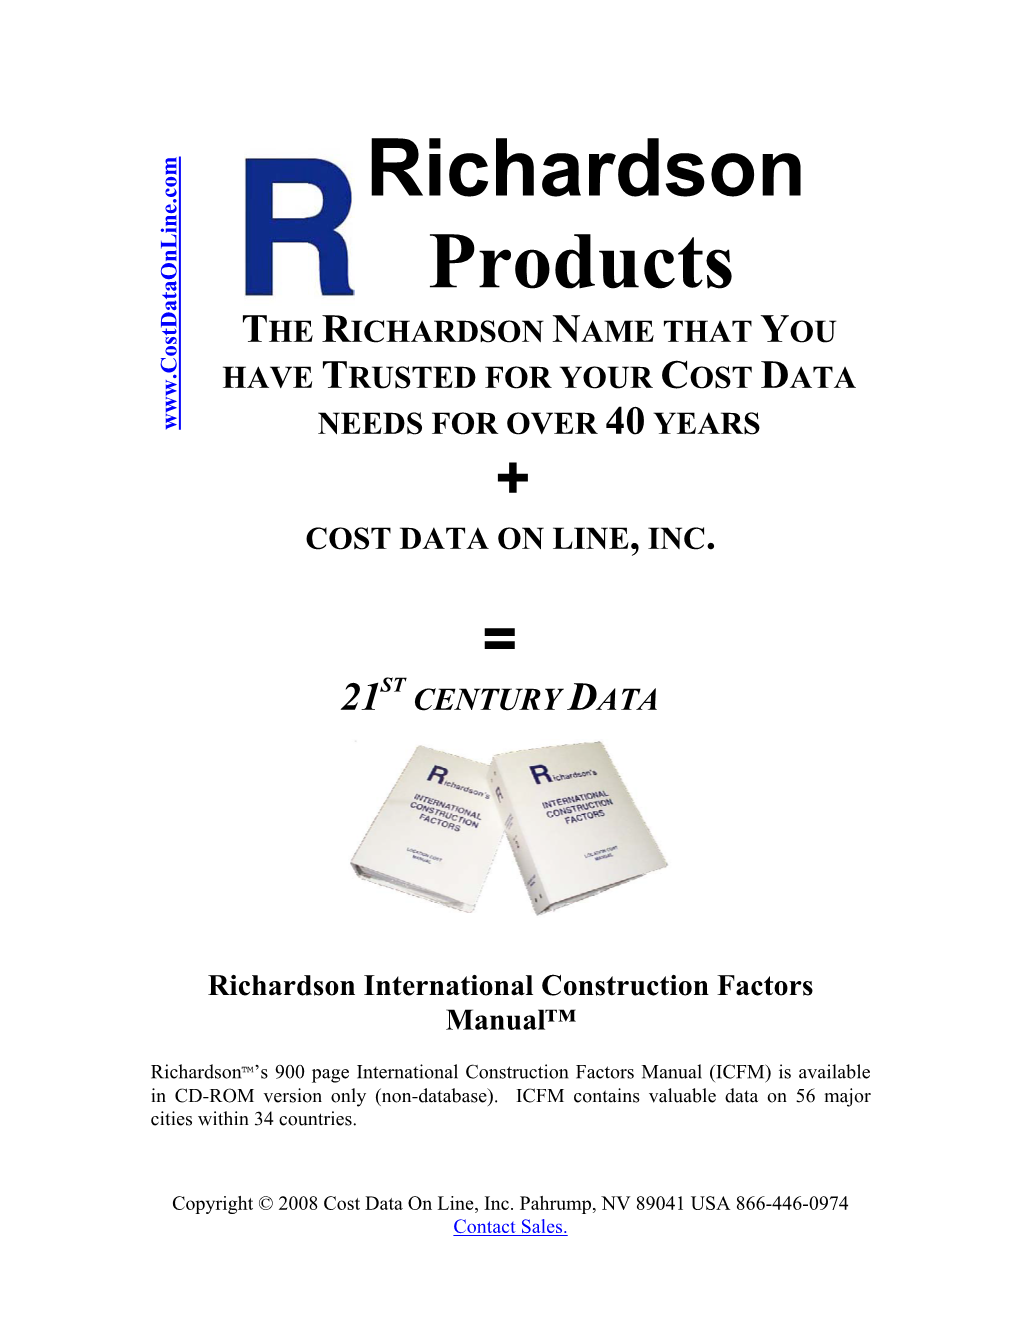 Richardson Products